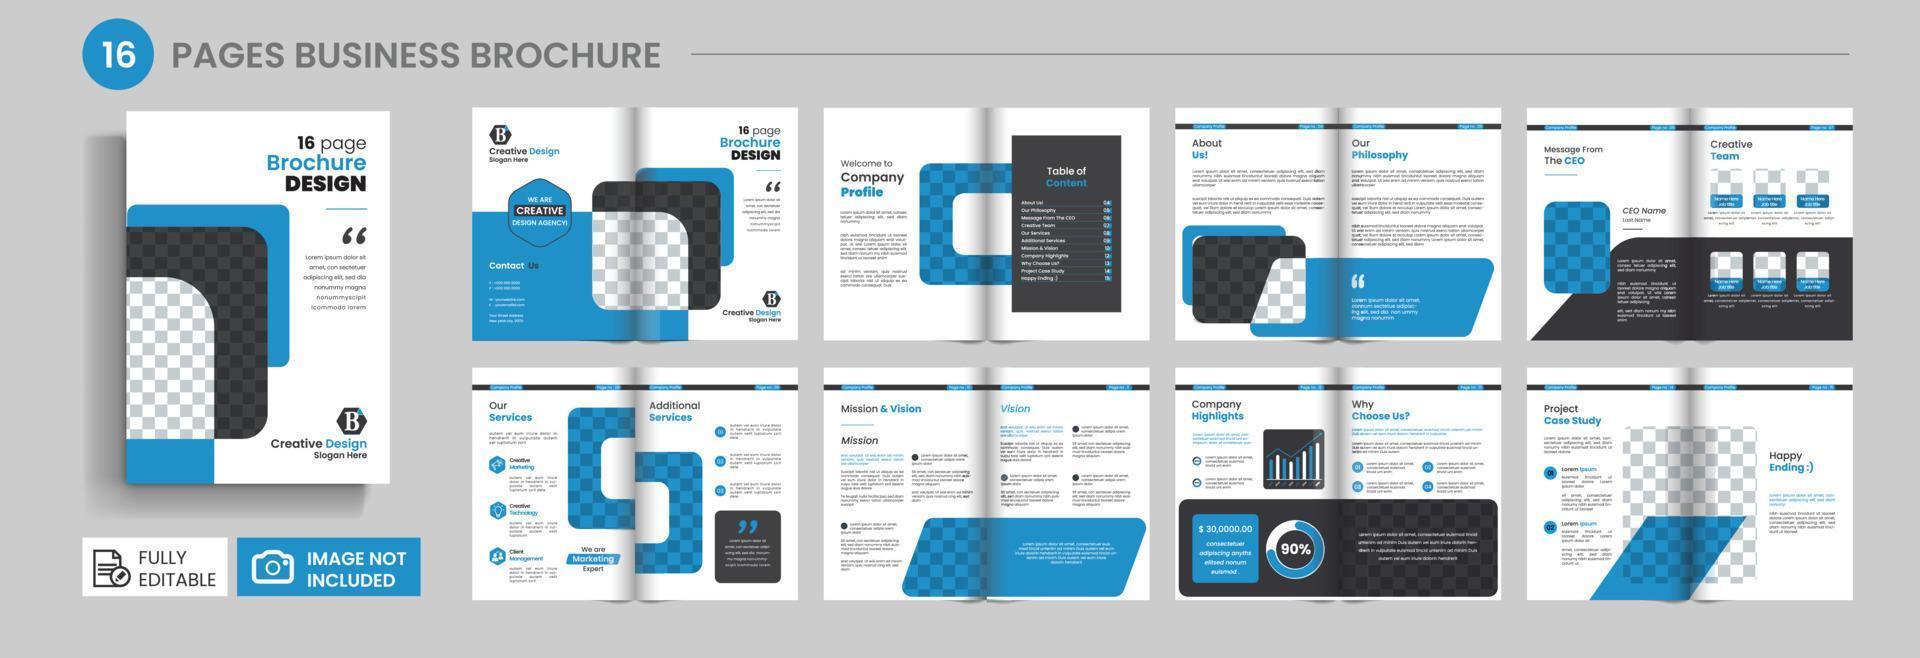 brochure design. company profile. 16 Page company profile brochure design. Multipage Business Brochure, Modern Business Brochure, Corporate Business Presentation Guide Brochure Template, Annual Report vector